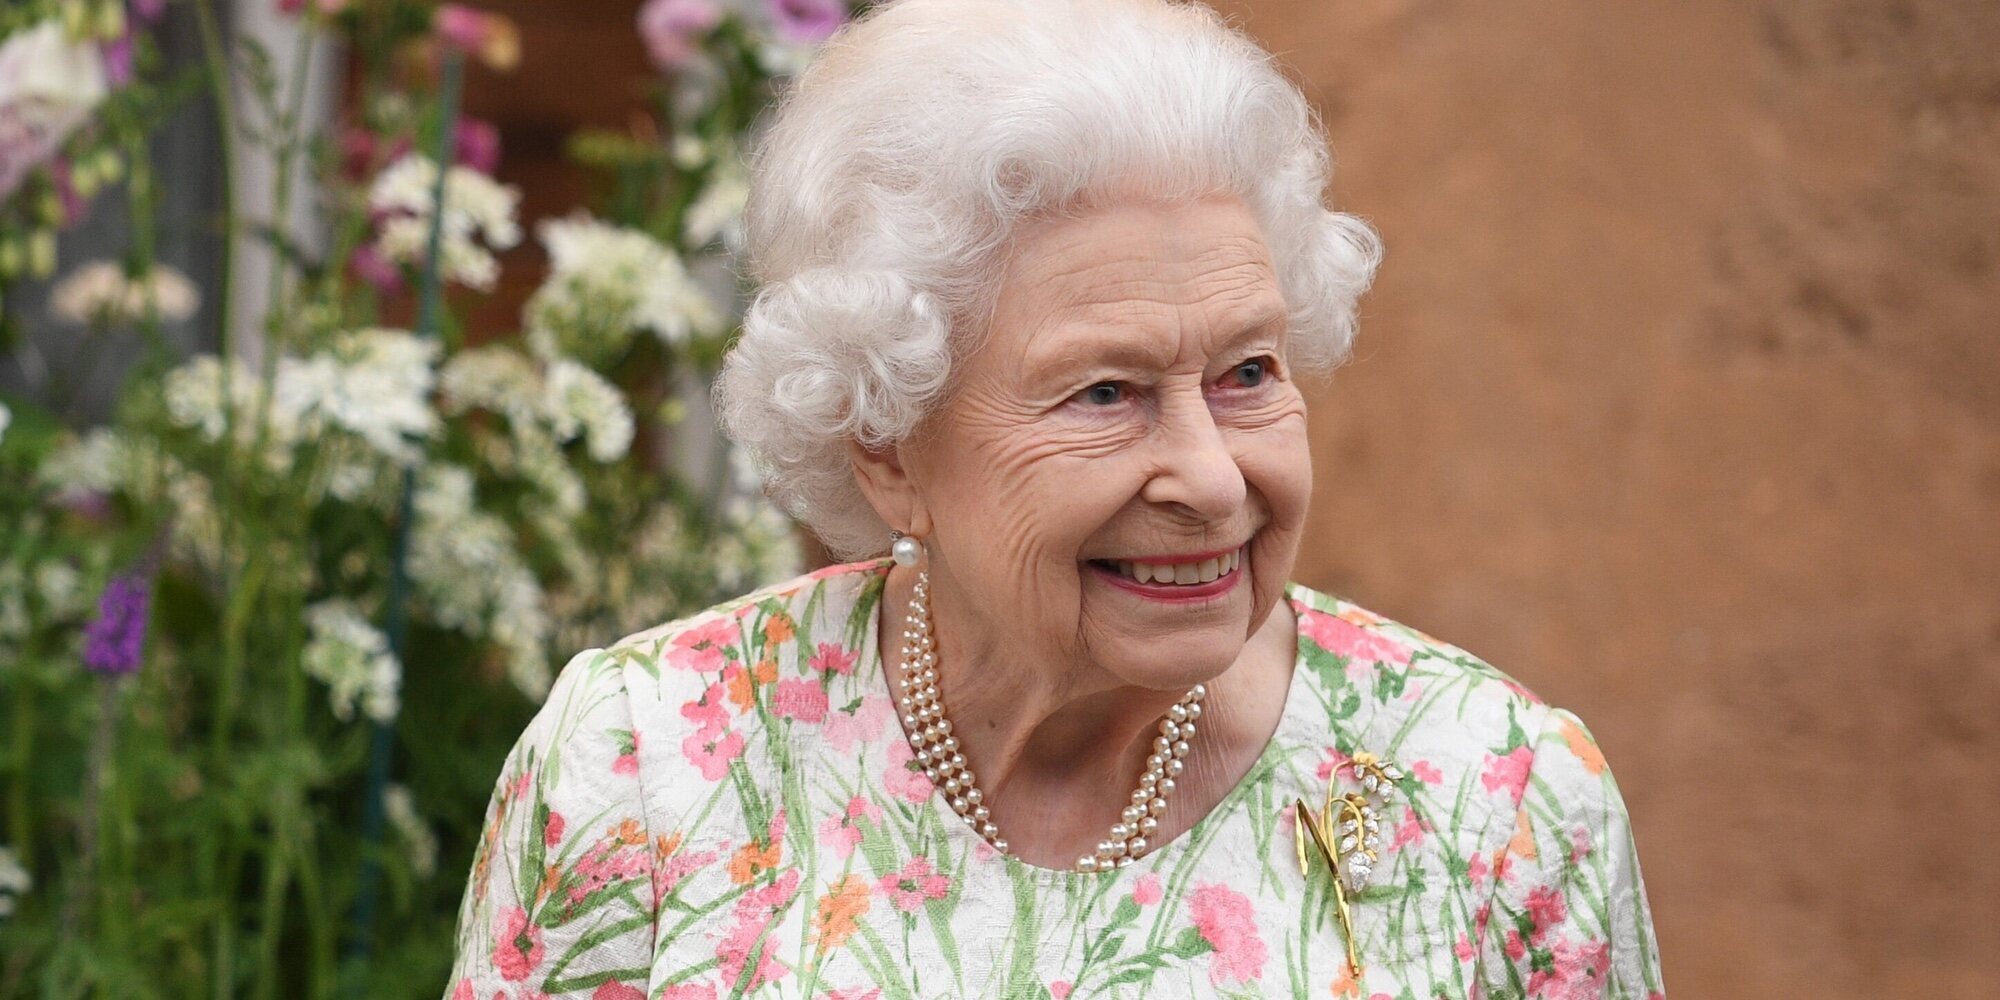 La Reina Isabel volverá al Palacio de Buckingham en octubre por una cita deportiva internacional